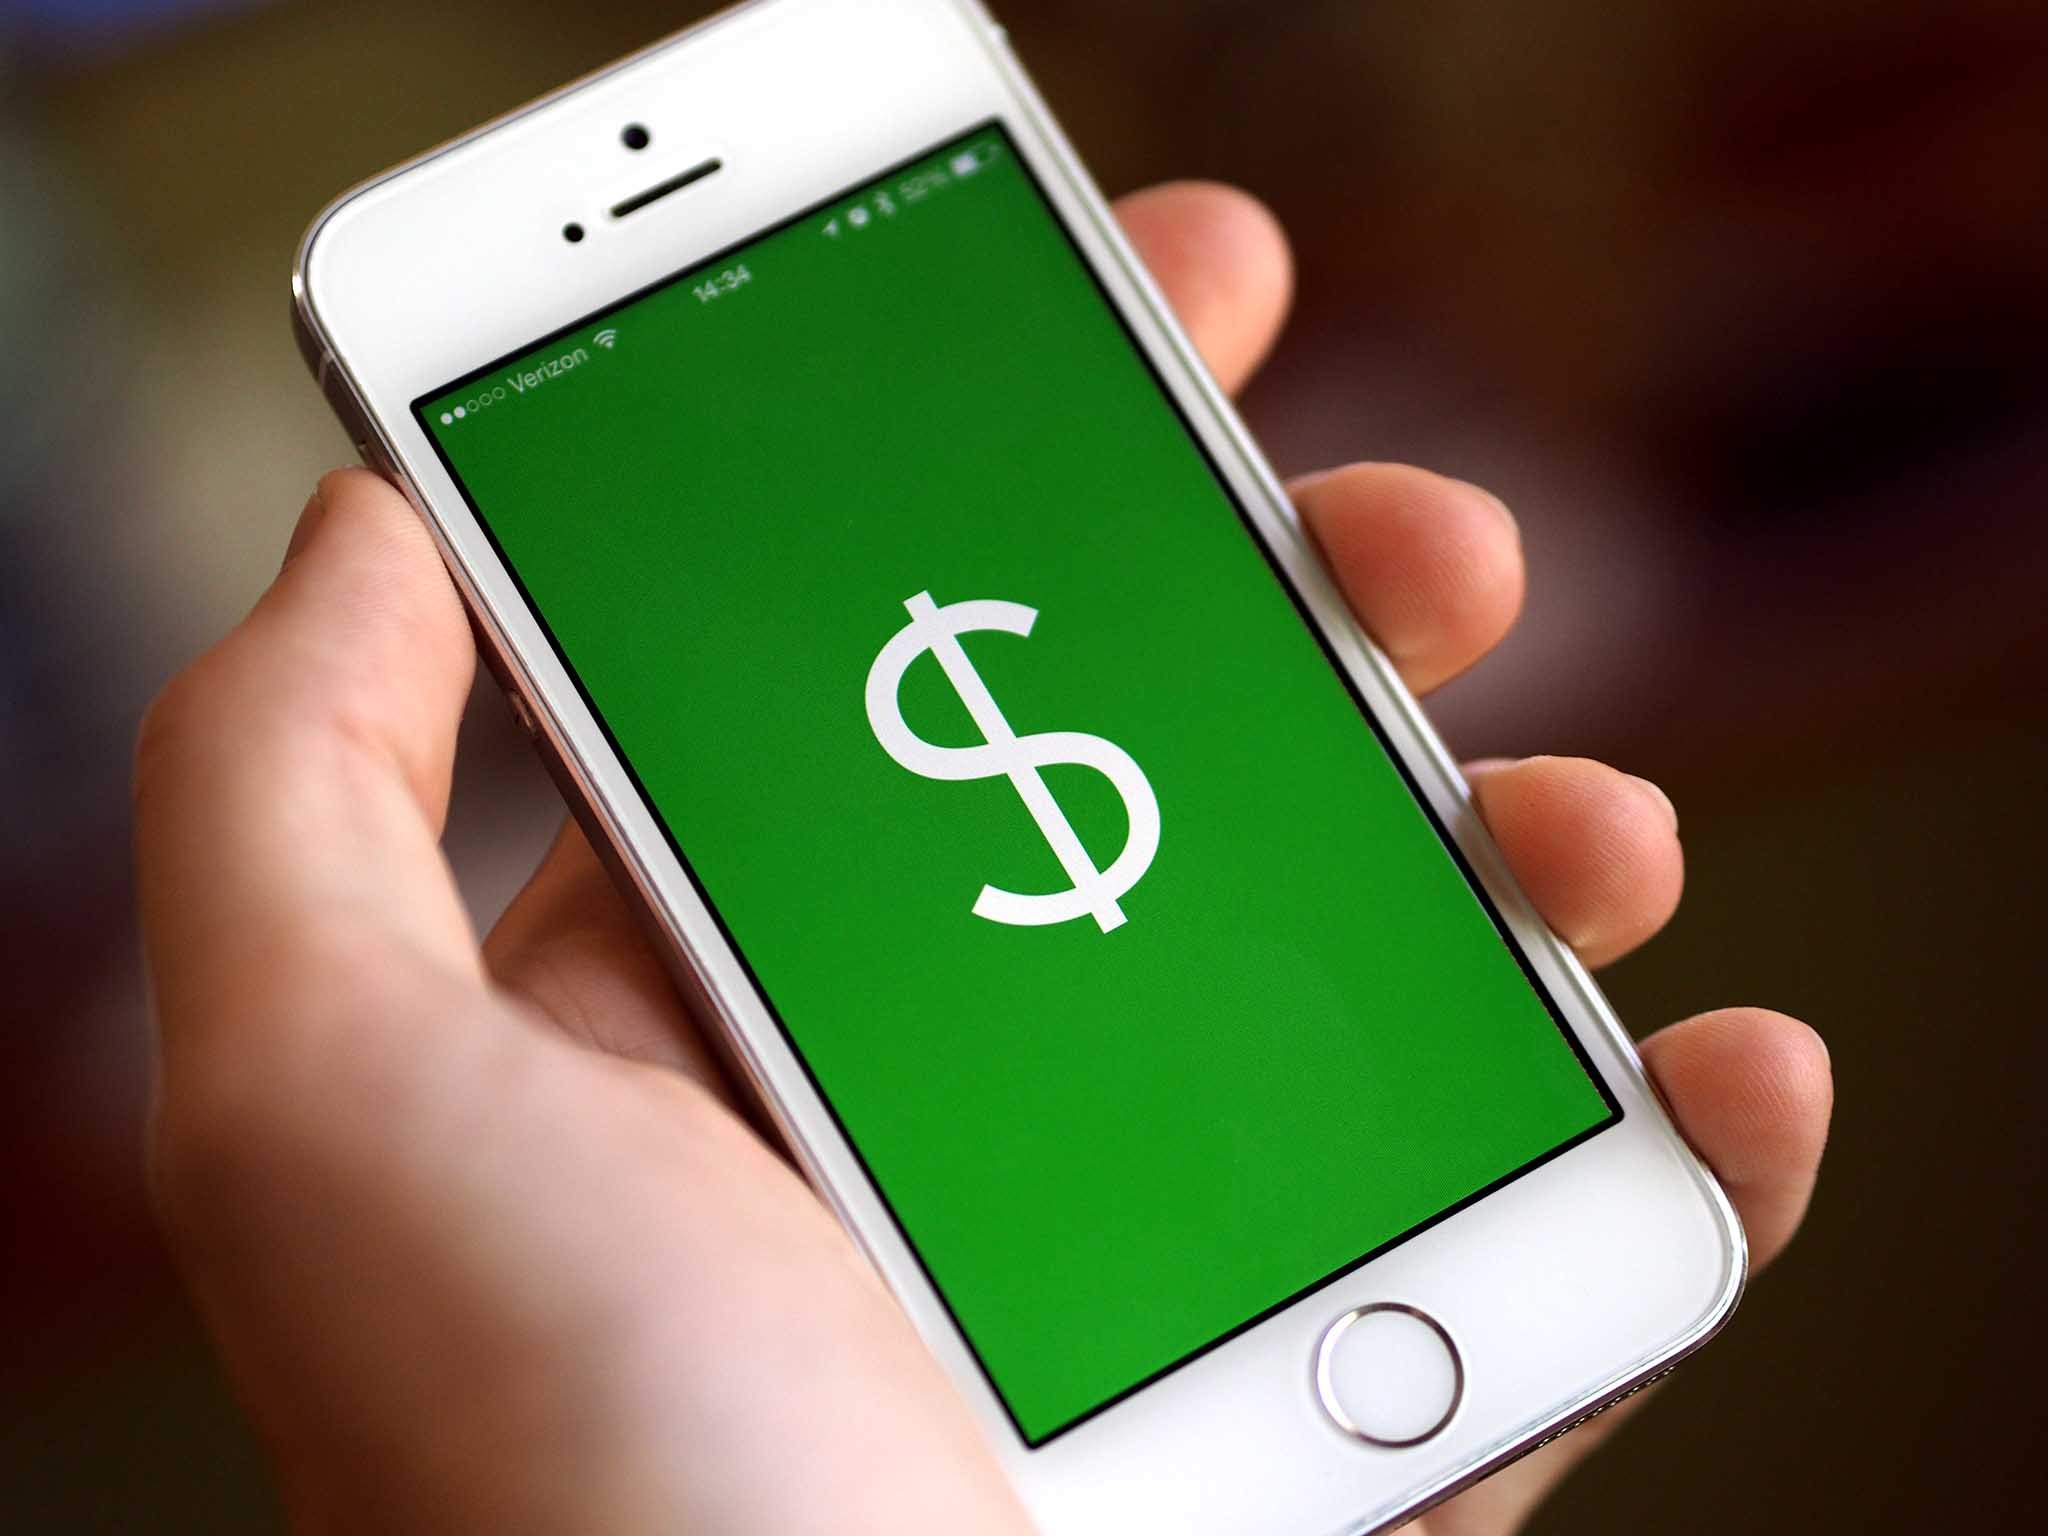 Square Cash can now send money via text message